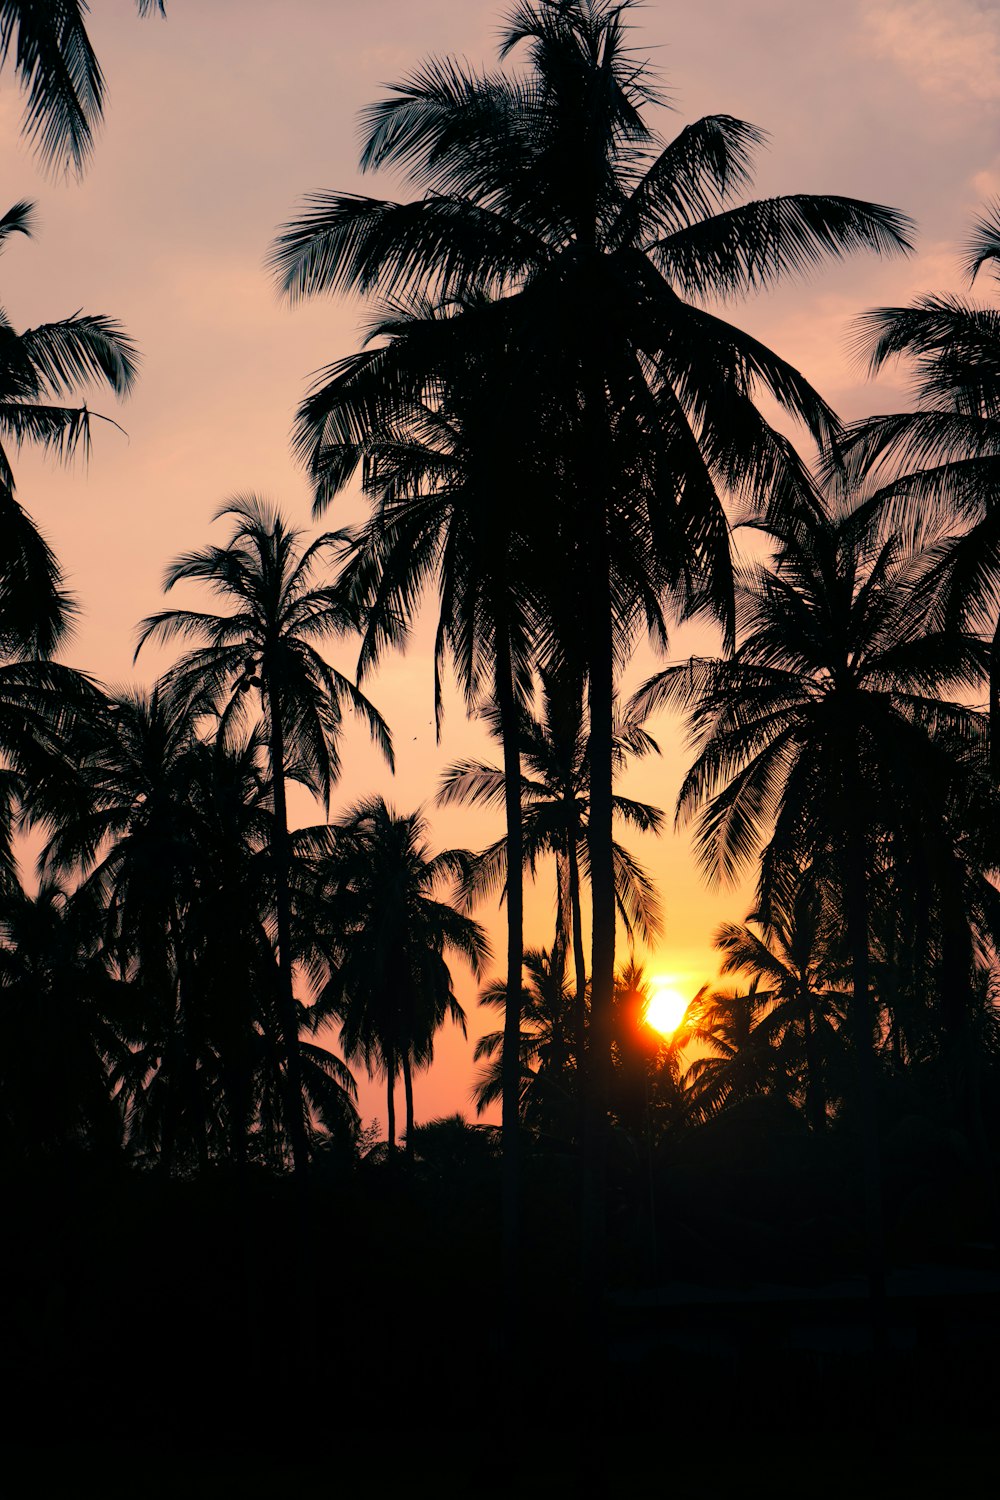 El sol se está poniendo detrás de unas palmeras